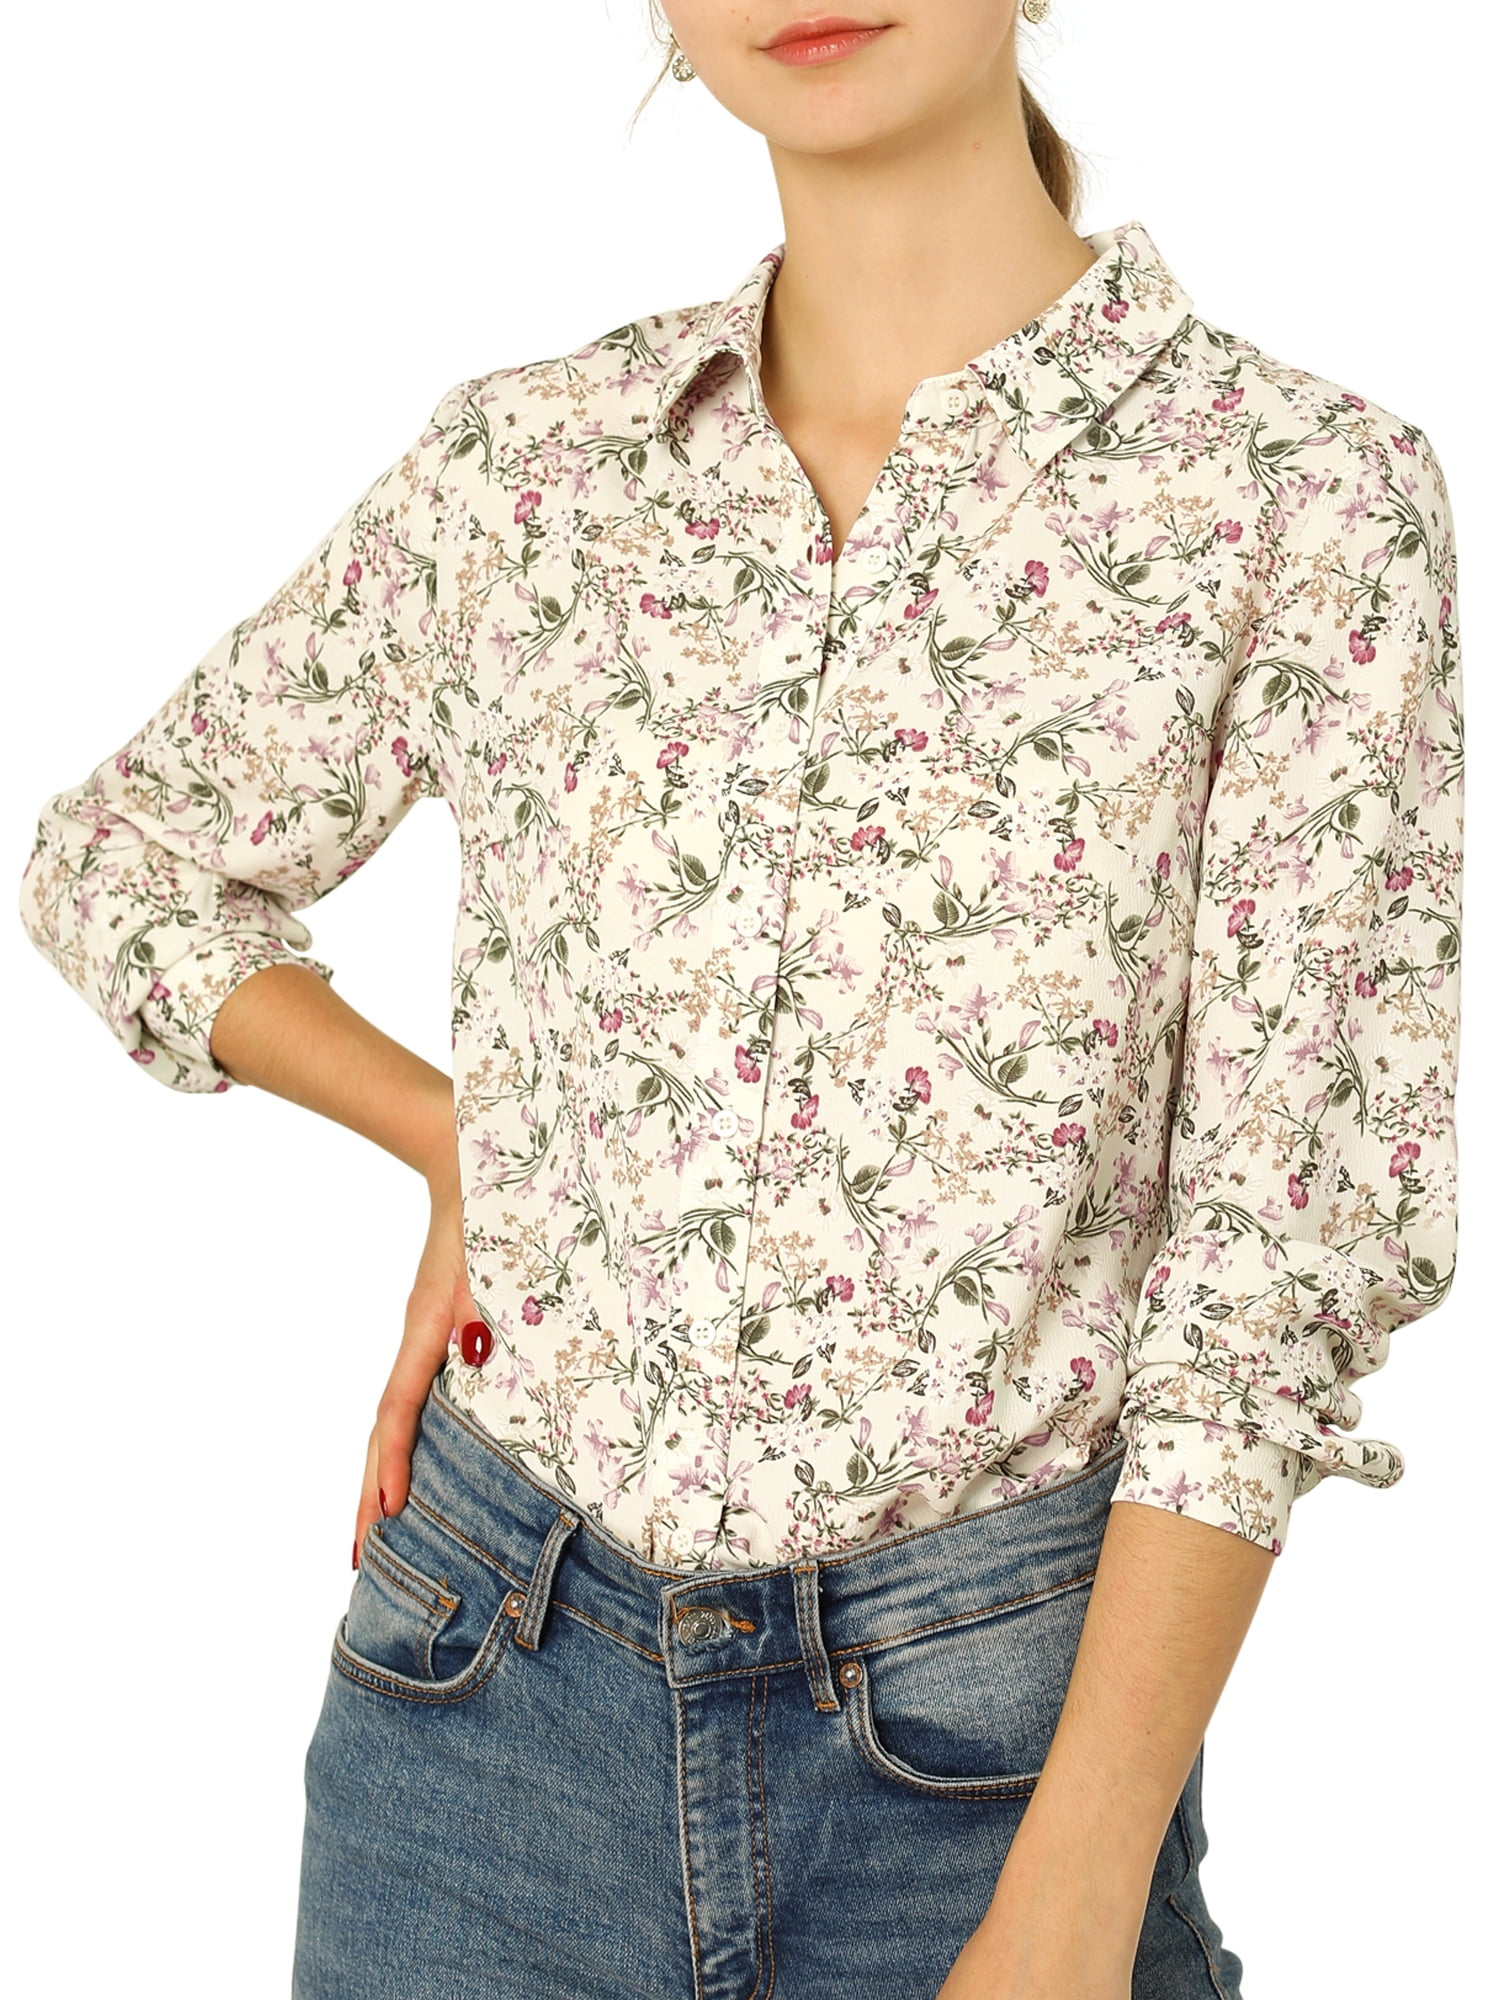 Unique Bargains - Women's Long Sleeve Button-Down Ditsy Floral Shirt ...